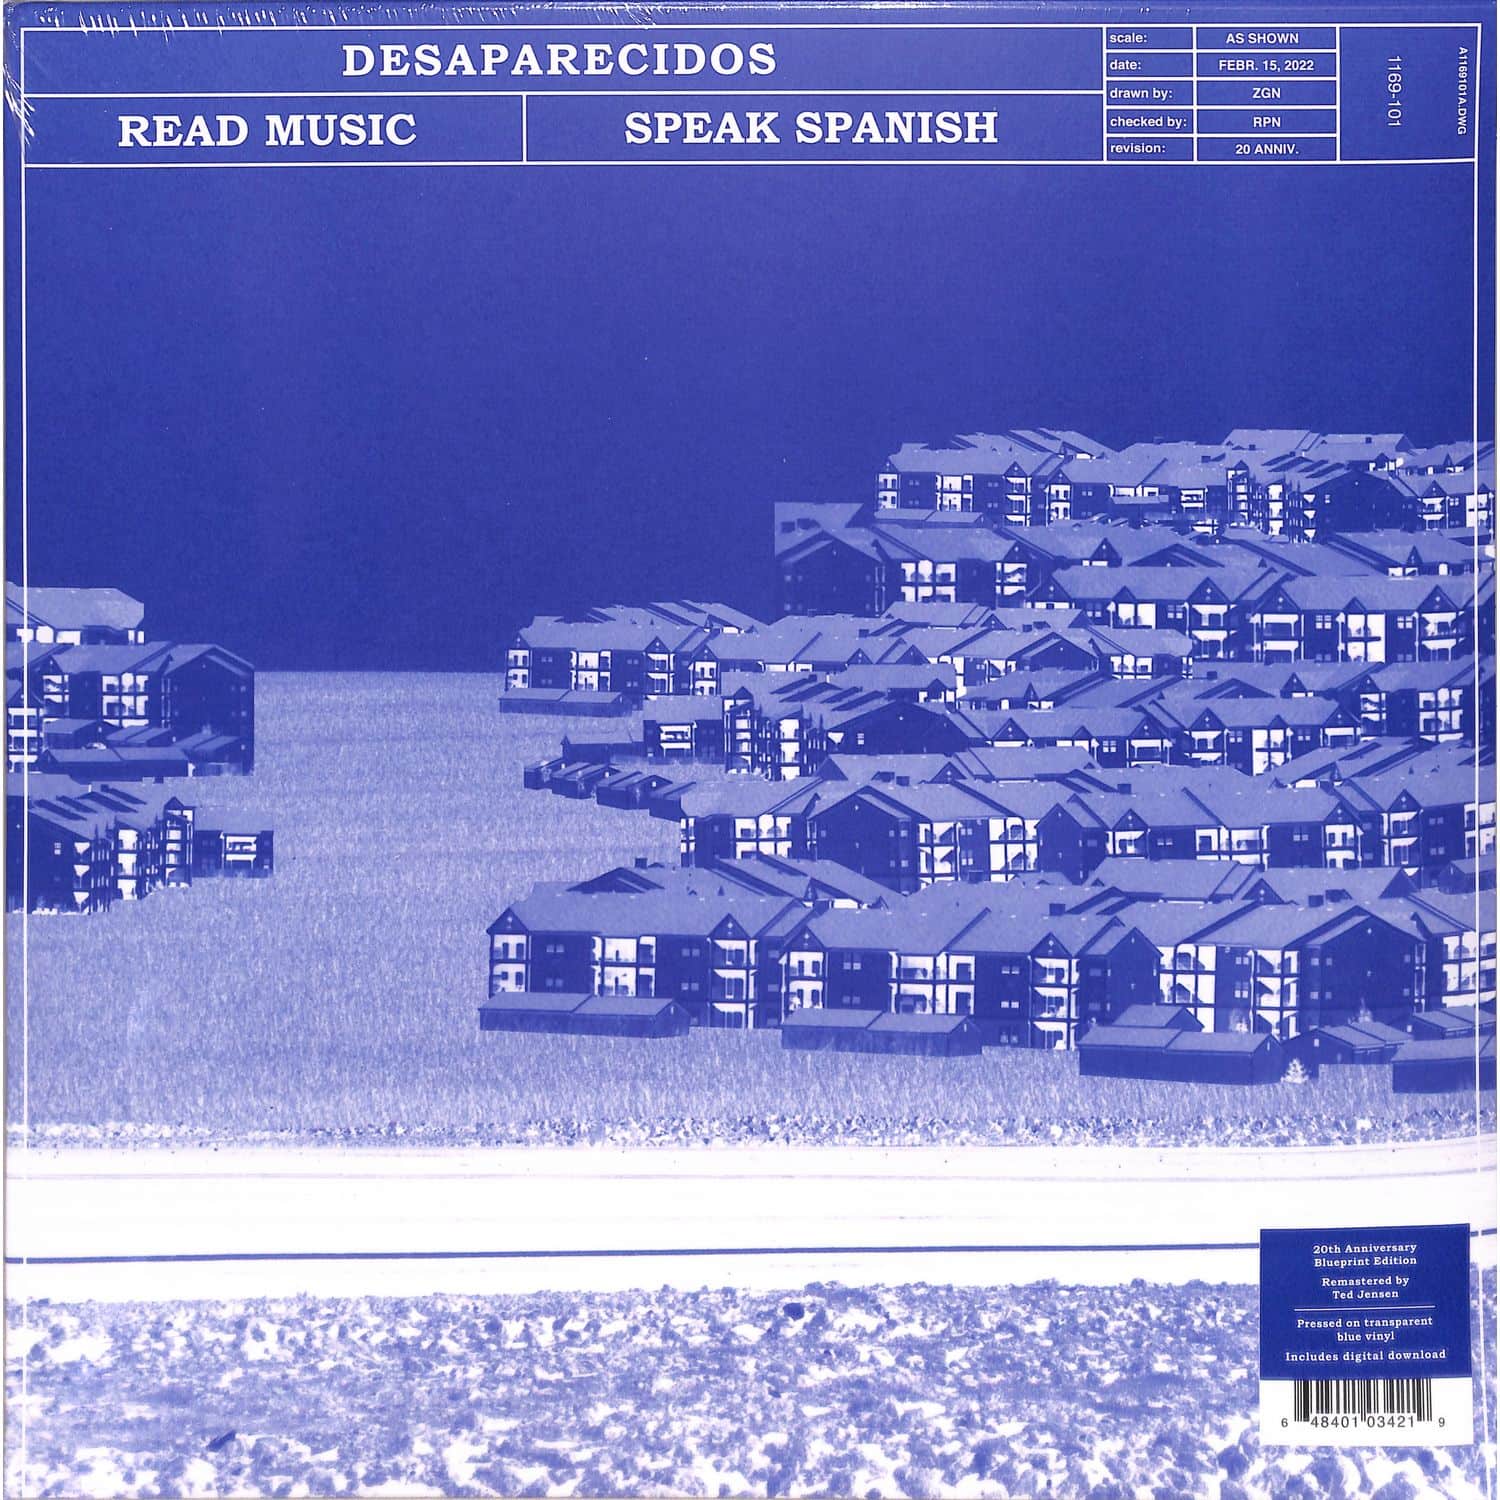 Desaparecidos - REAL MUSIC / SPEAK SPANISH 